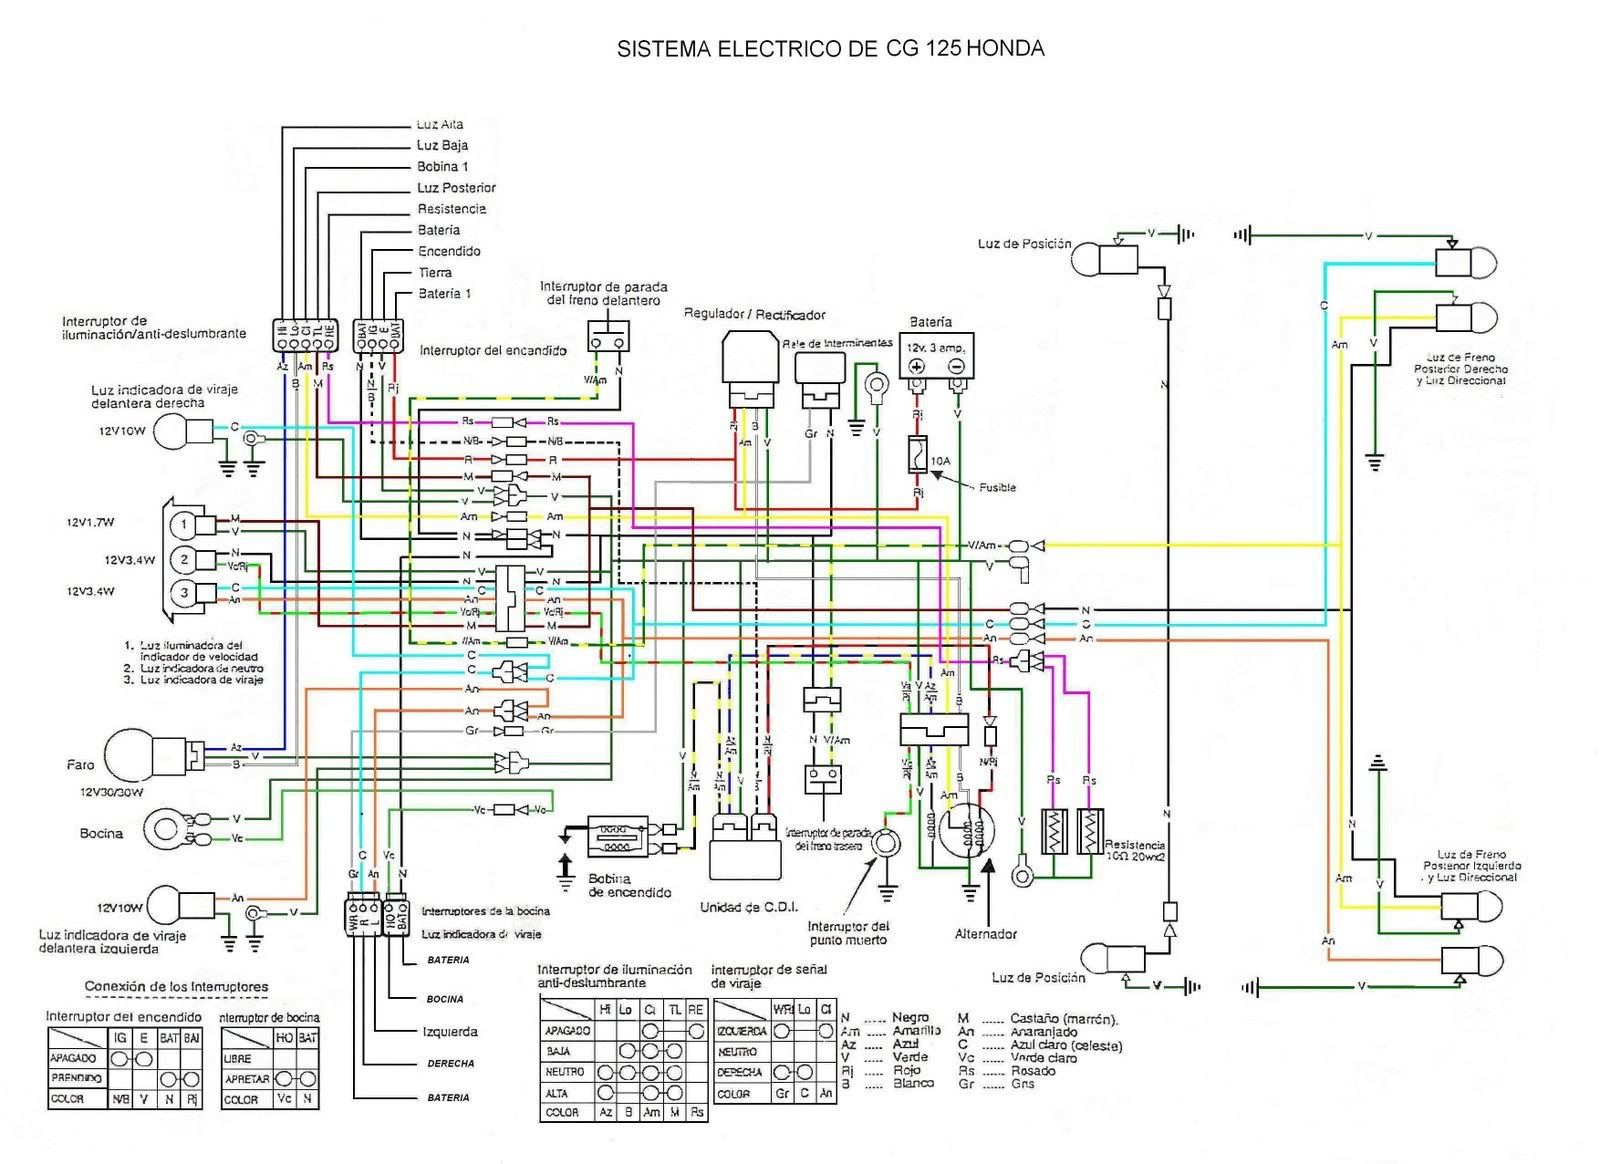 Diagrama O Sistema Electrico De Motos Chinas Mecanica De Motos Sistema Electrico Diagrama De Instalacion Electrica